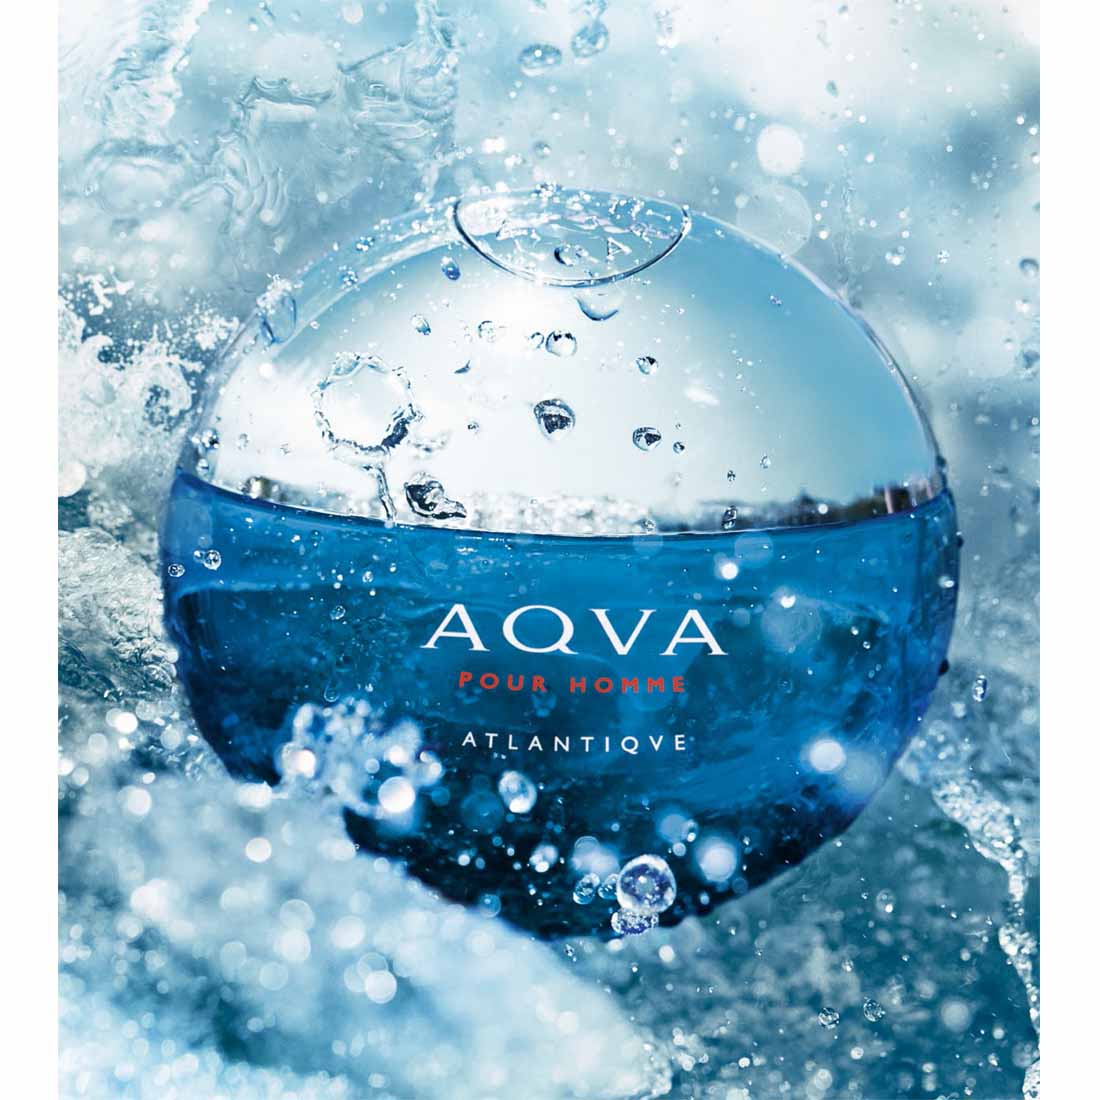 Bvlgari Aqua Atlantique Miniature Perfume - 5ml